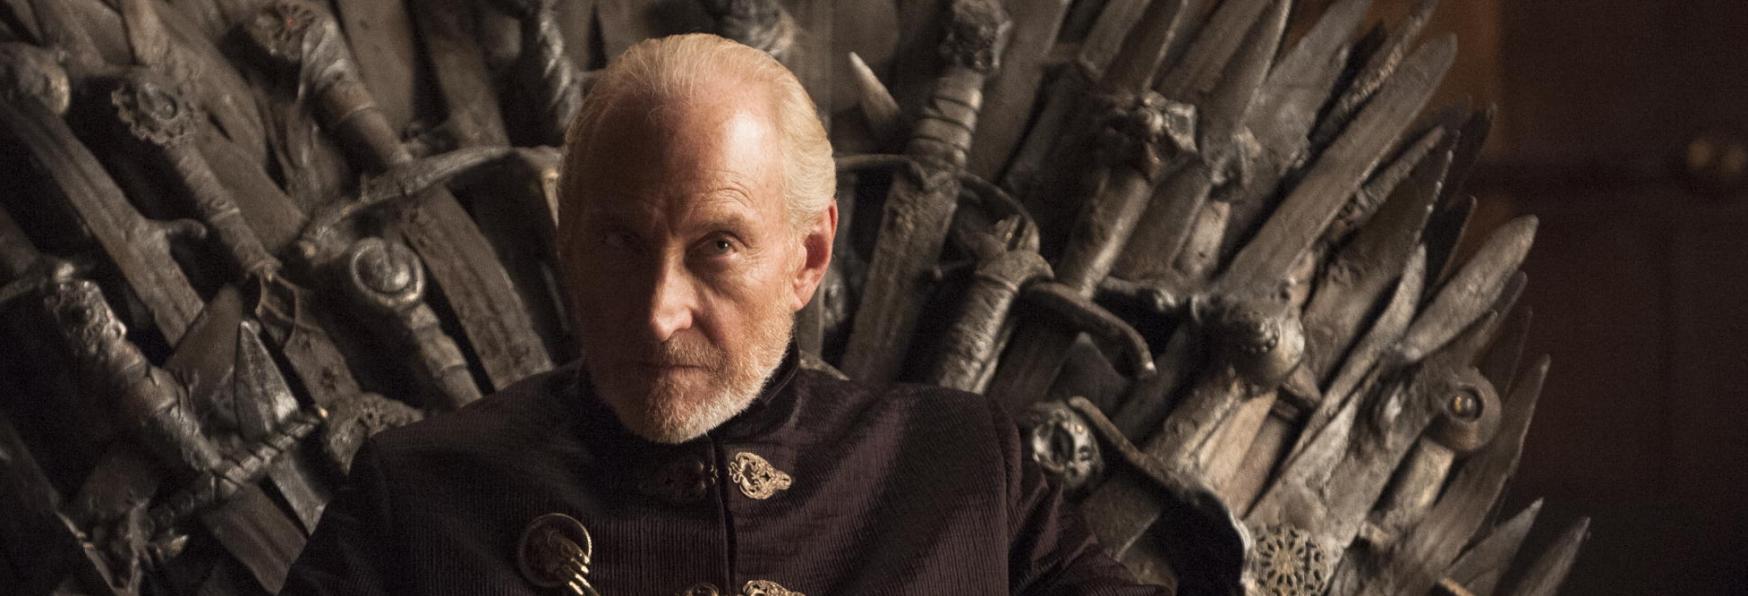 Game of Thrones: un membro del Cast firmerebbe una Petizione per cambiare il Finale